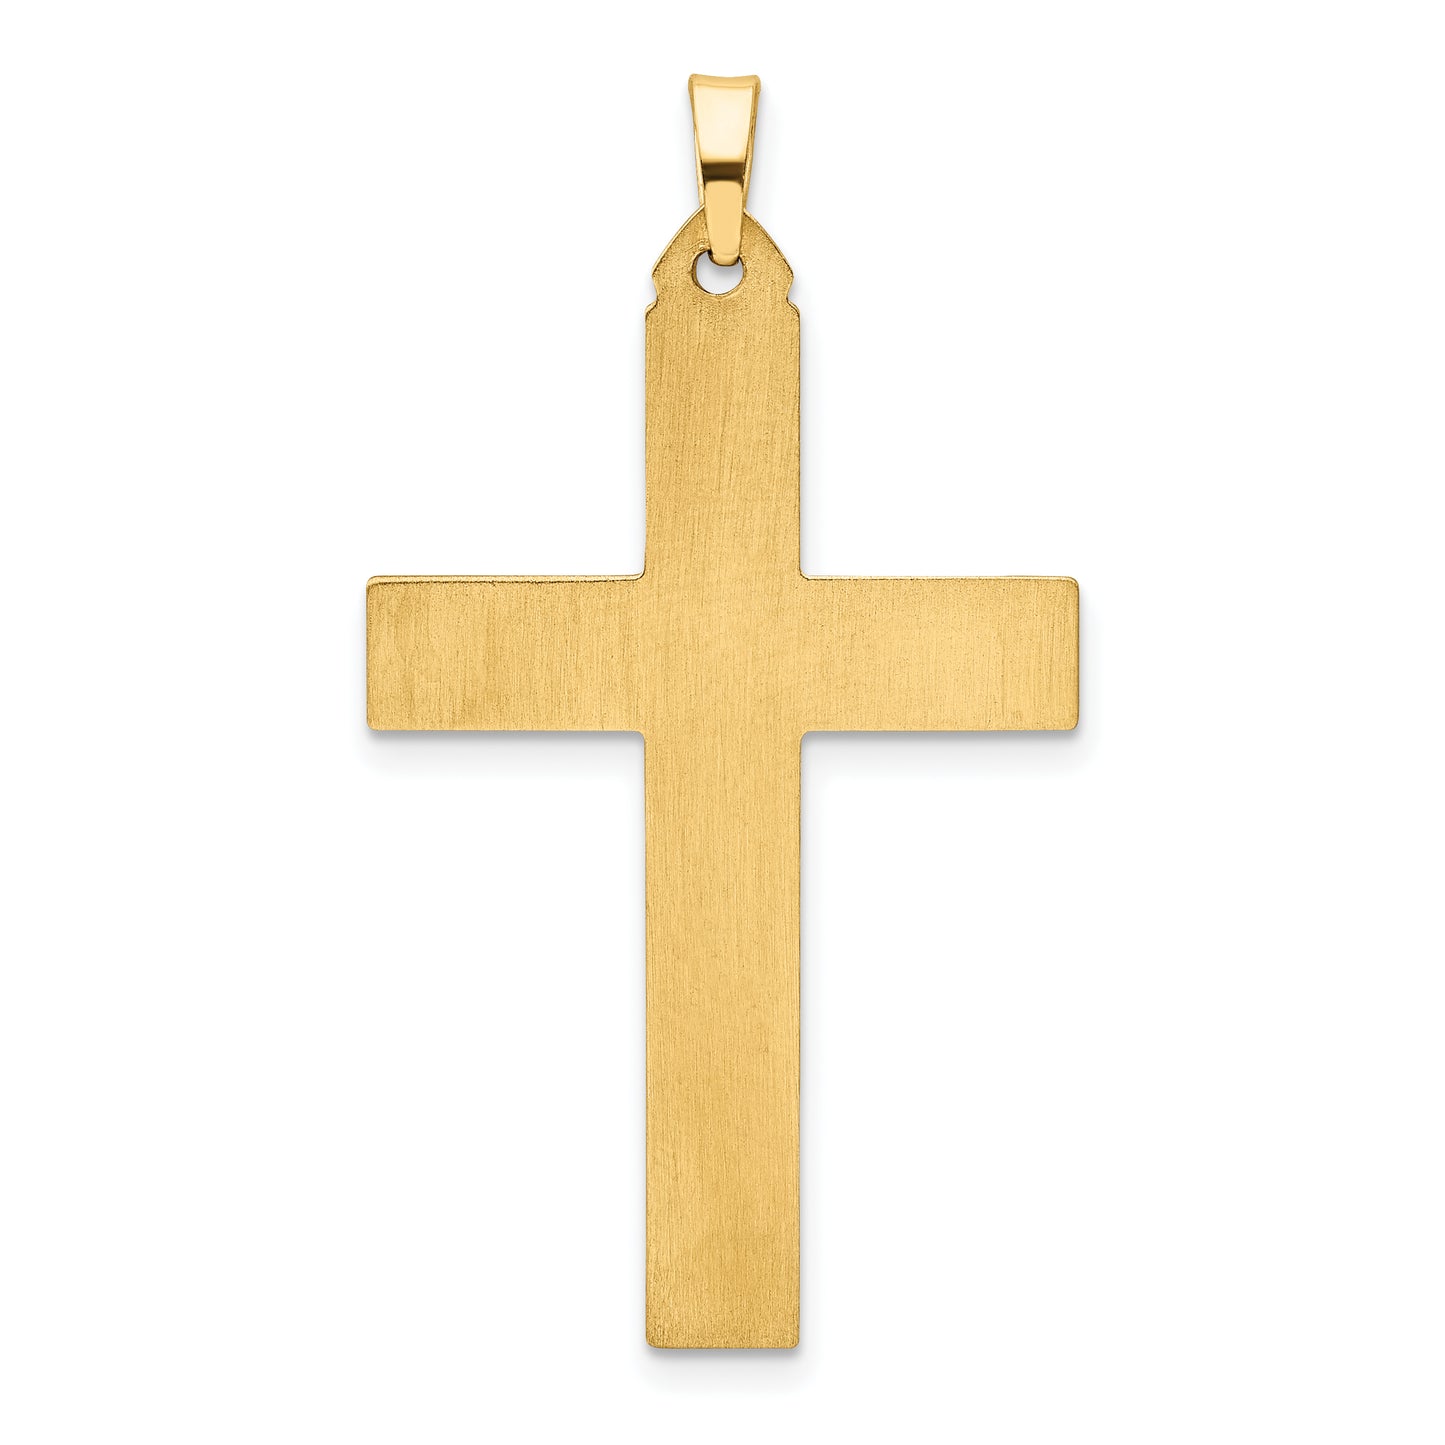 14k Brushed and Polished Latin Cross Pendant